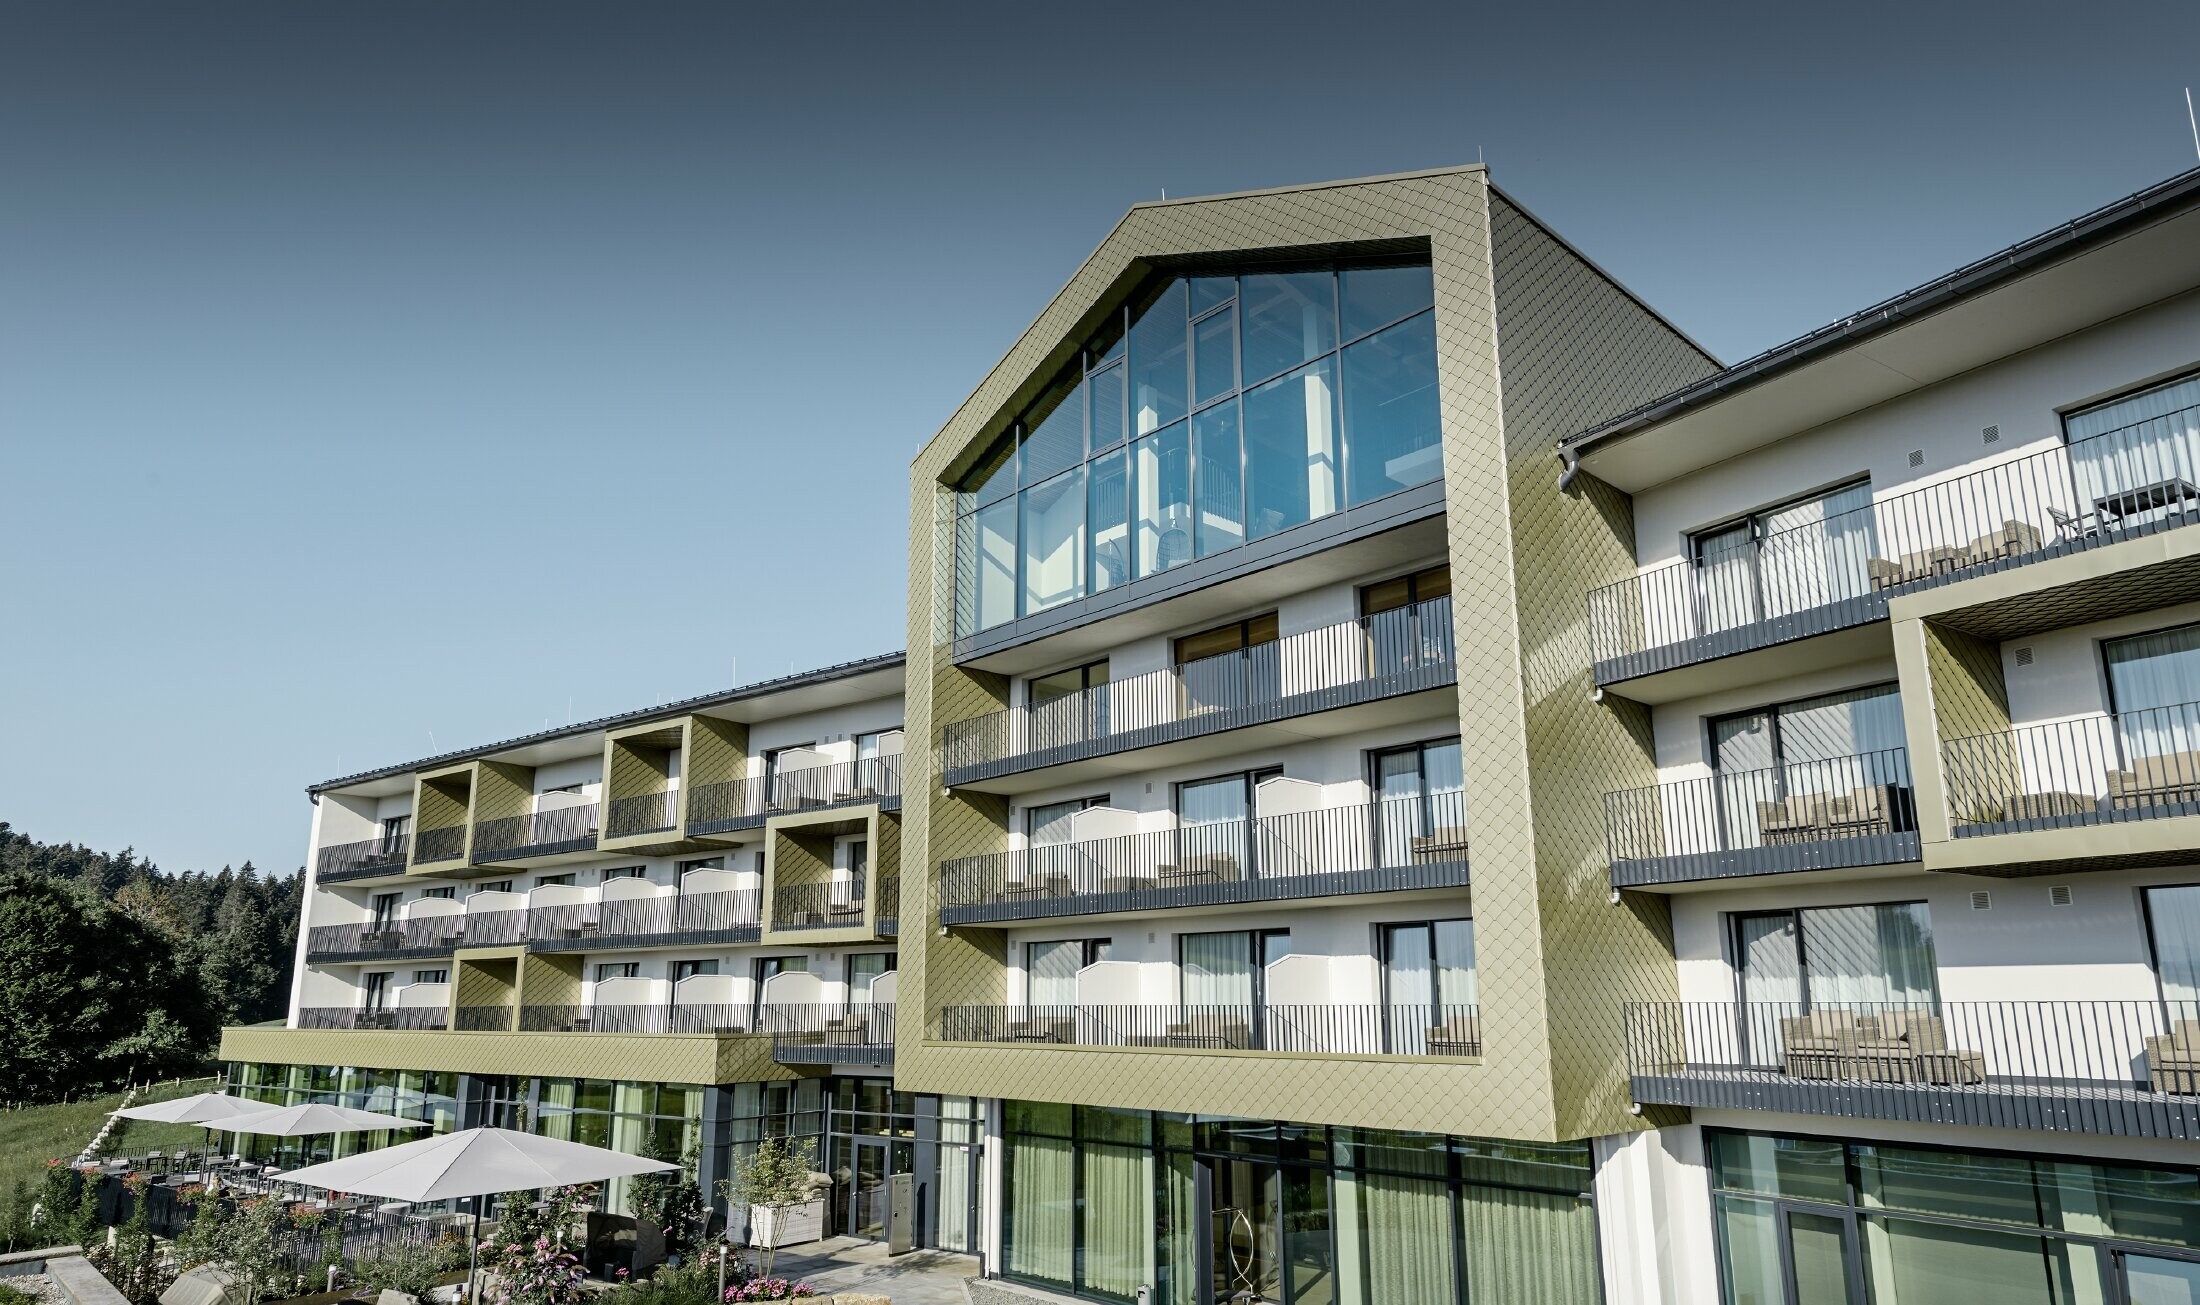 Fasadeutforming på Hotell Edita i Scheidegg med aluminiumsromber fra PREFA i formatet 20 × 20 i spesialfargen lys bronse.